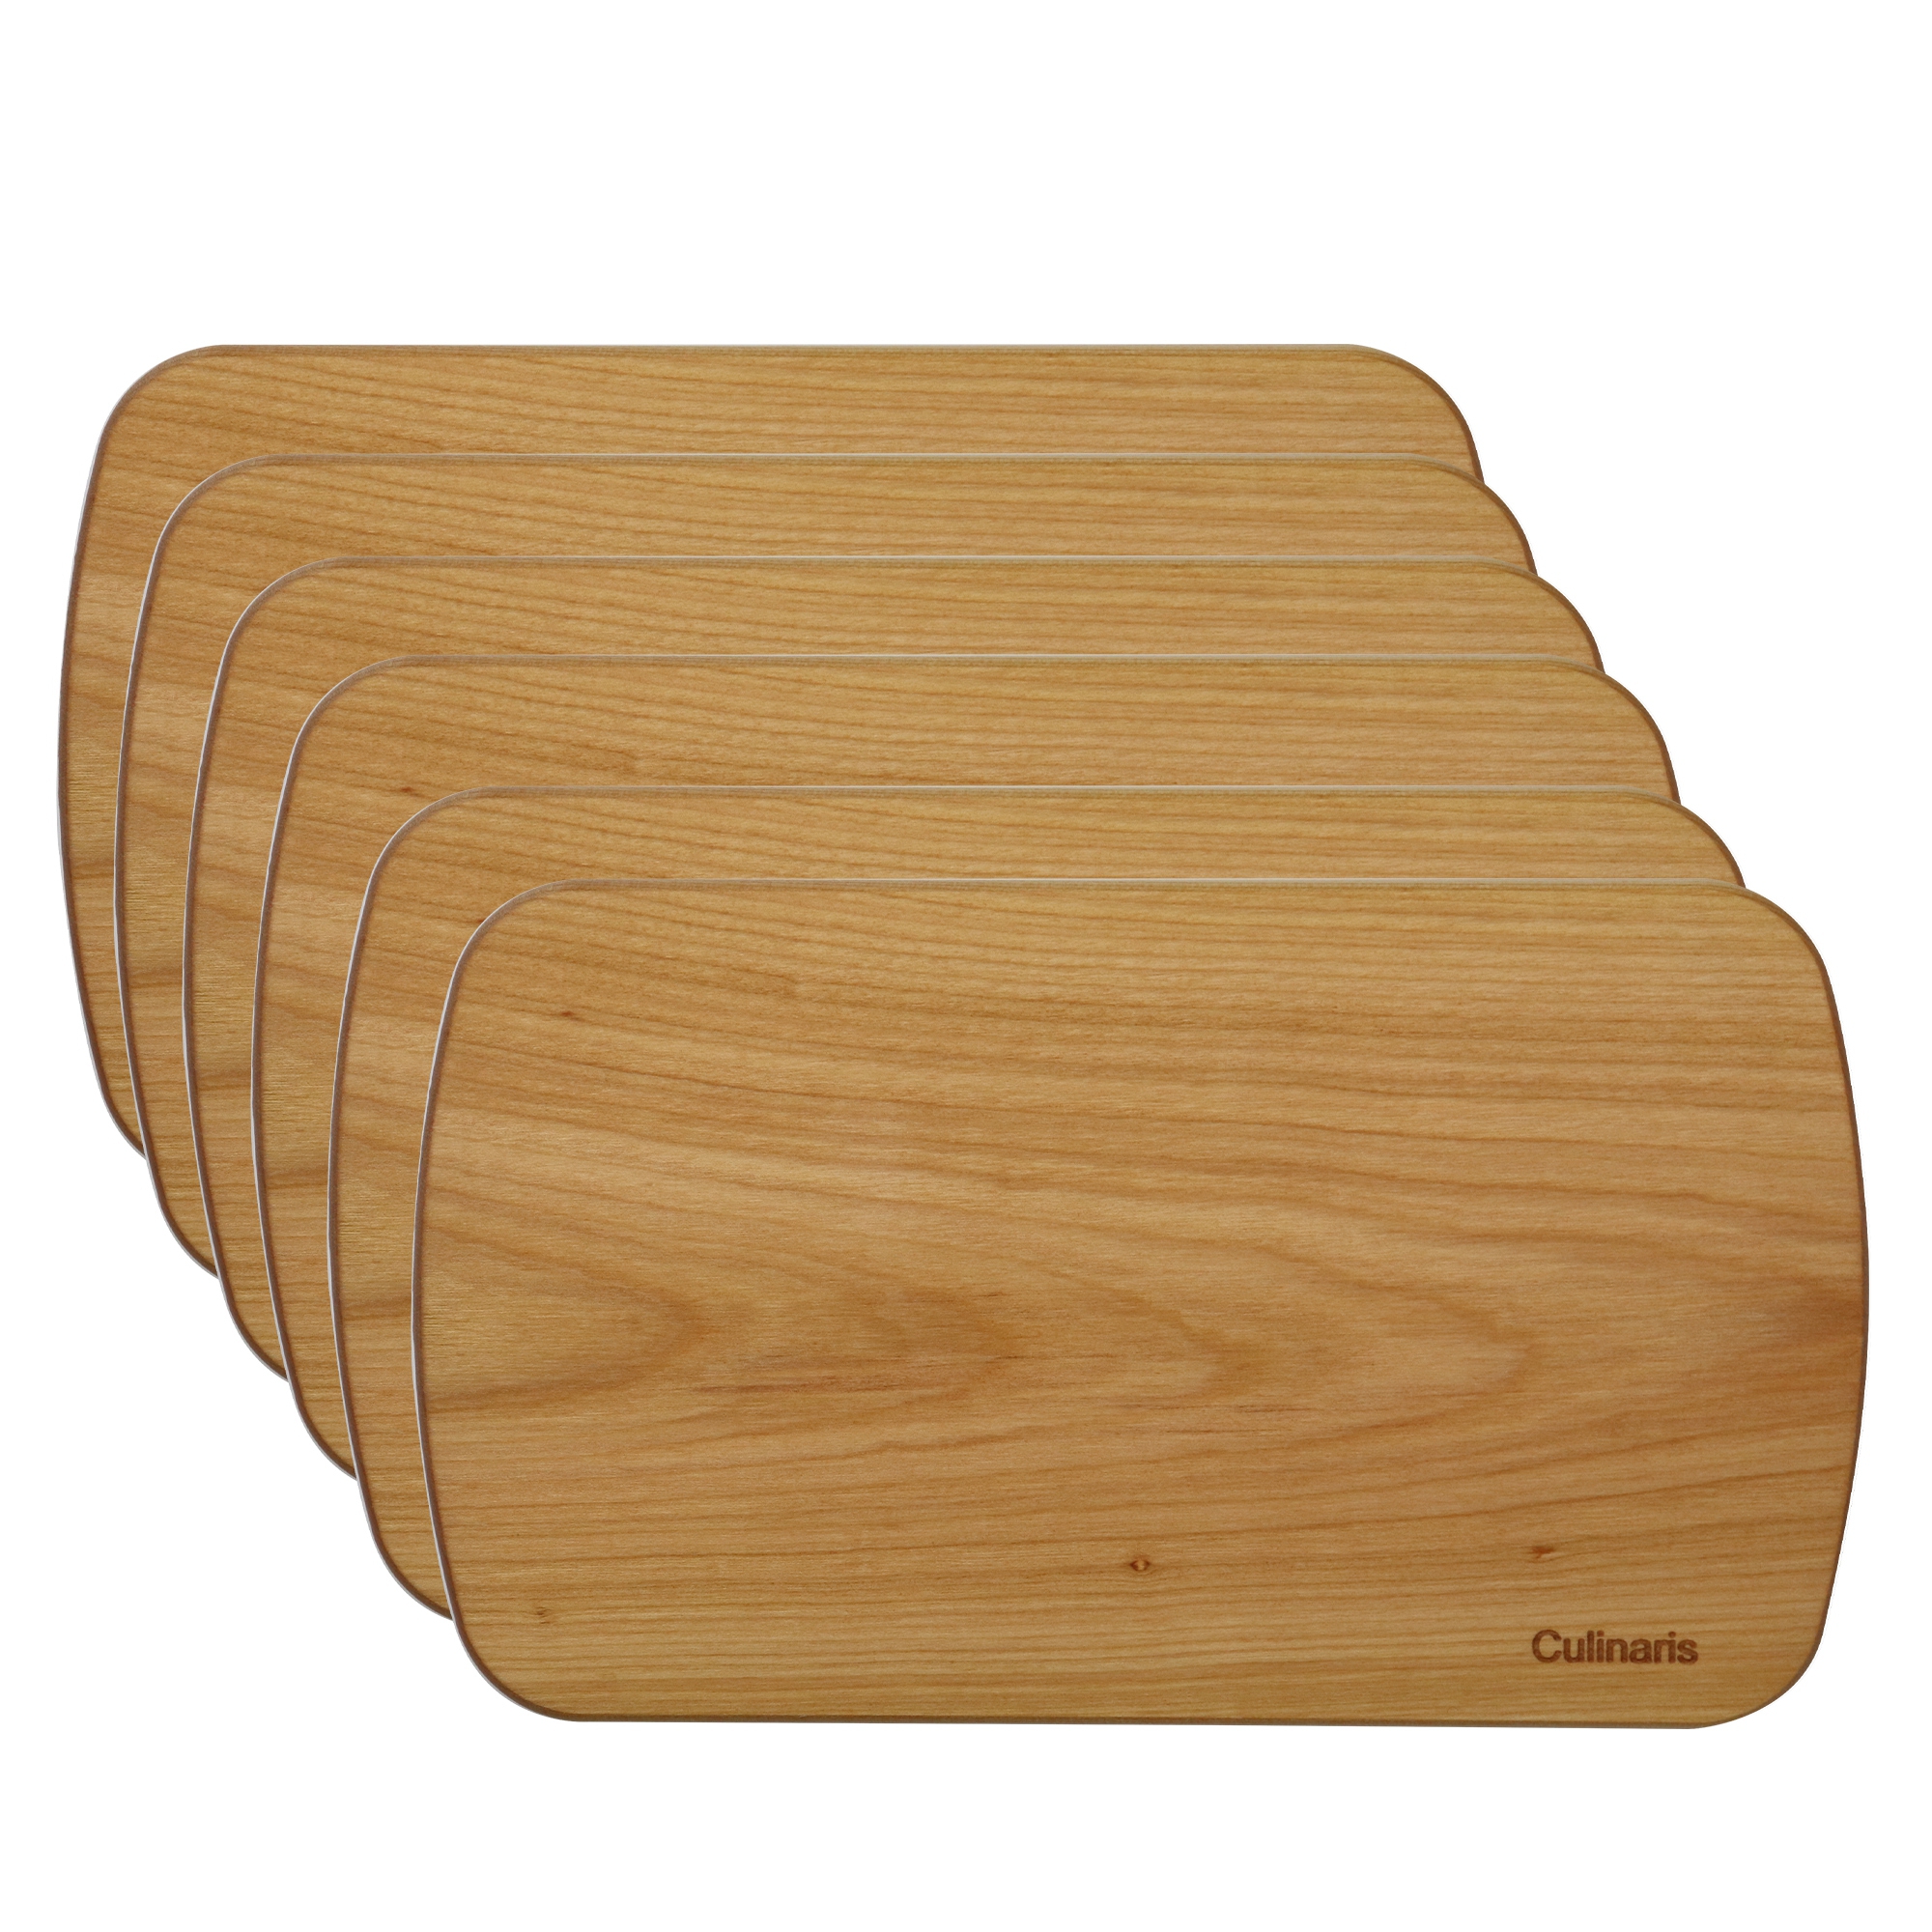 Culinaris - cutting board - cherry wood set of 6 - 24 x 14 cm